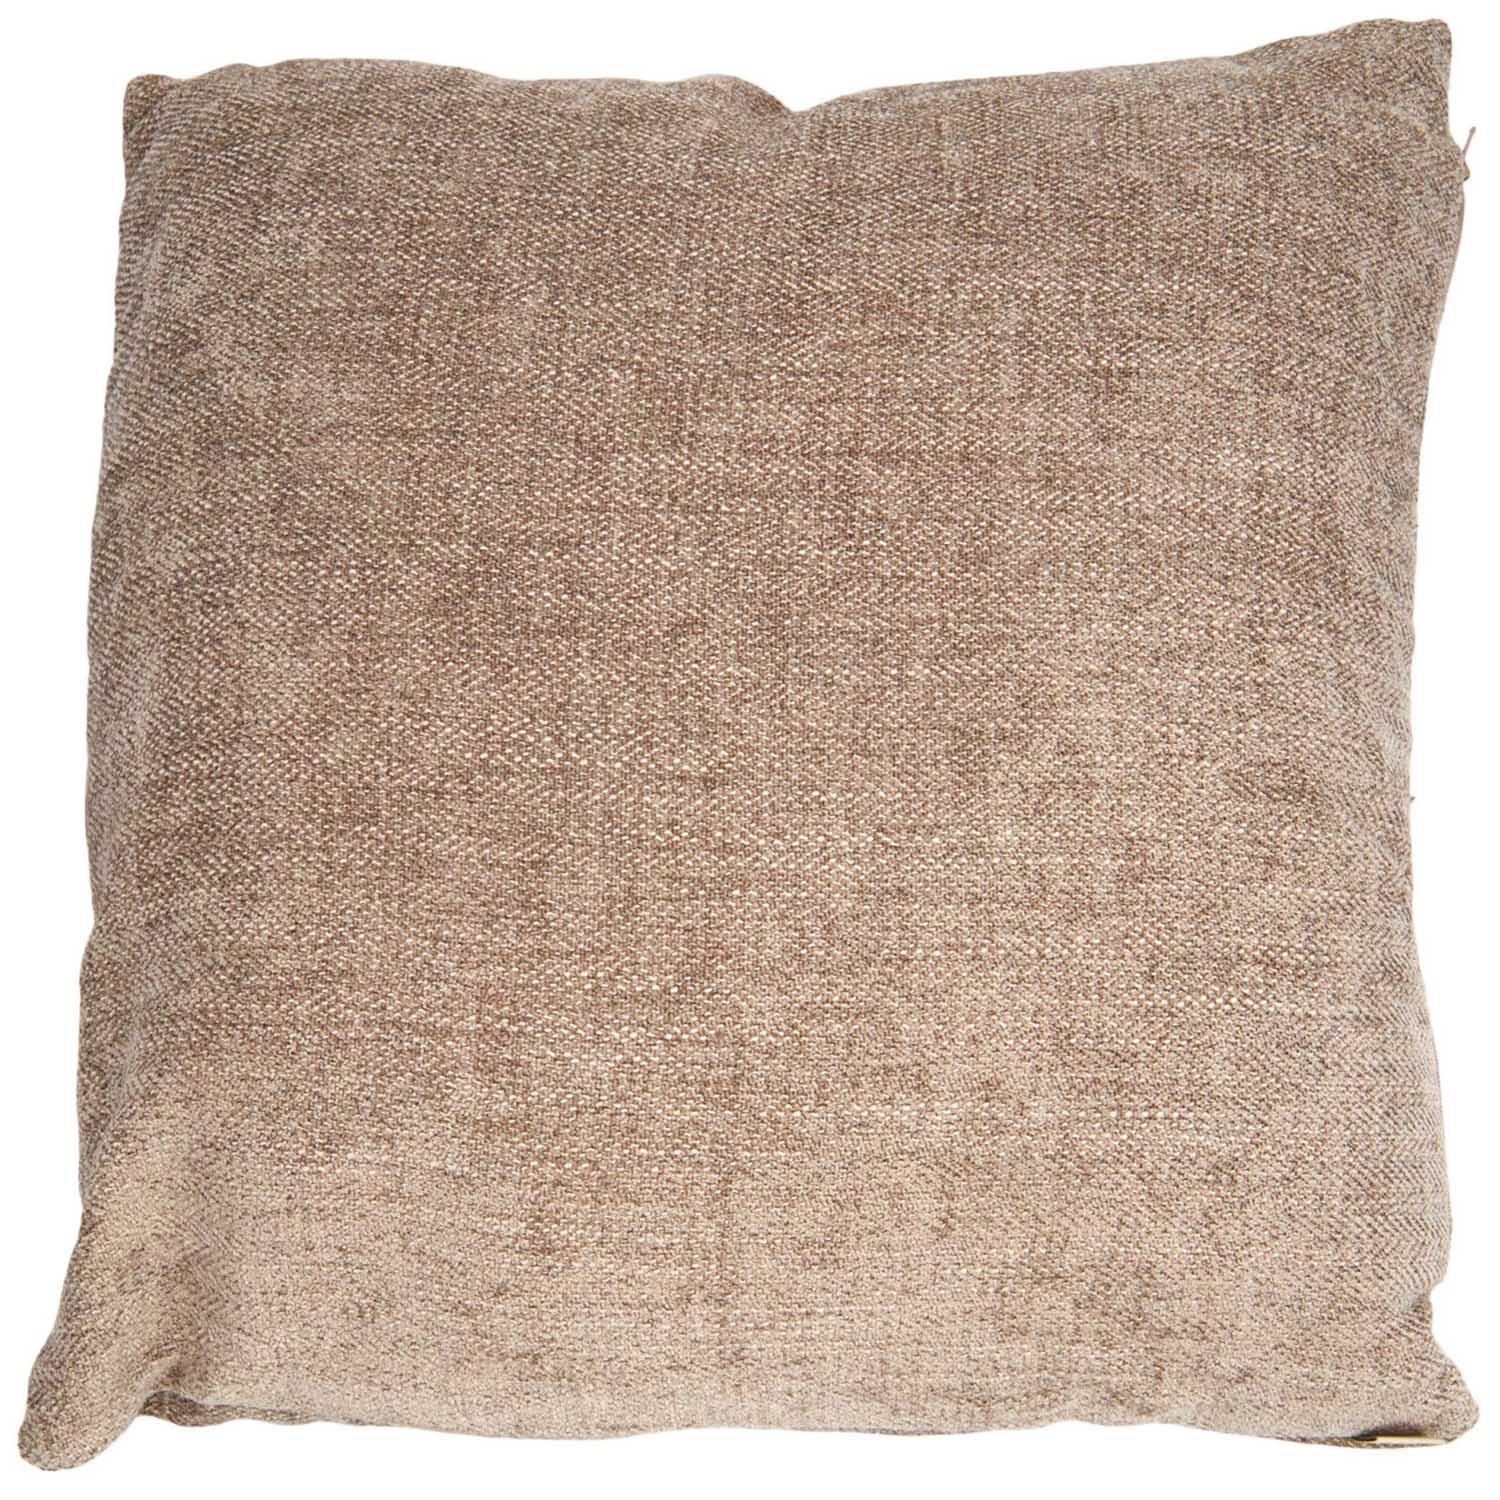 Evans Litchfield Darwin Mink Cushion 43 x 43cm Image 1